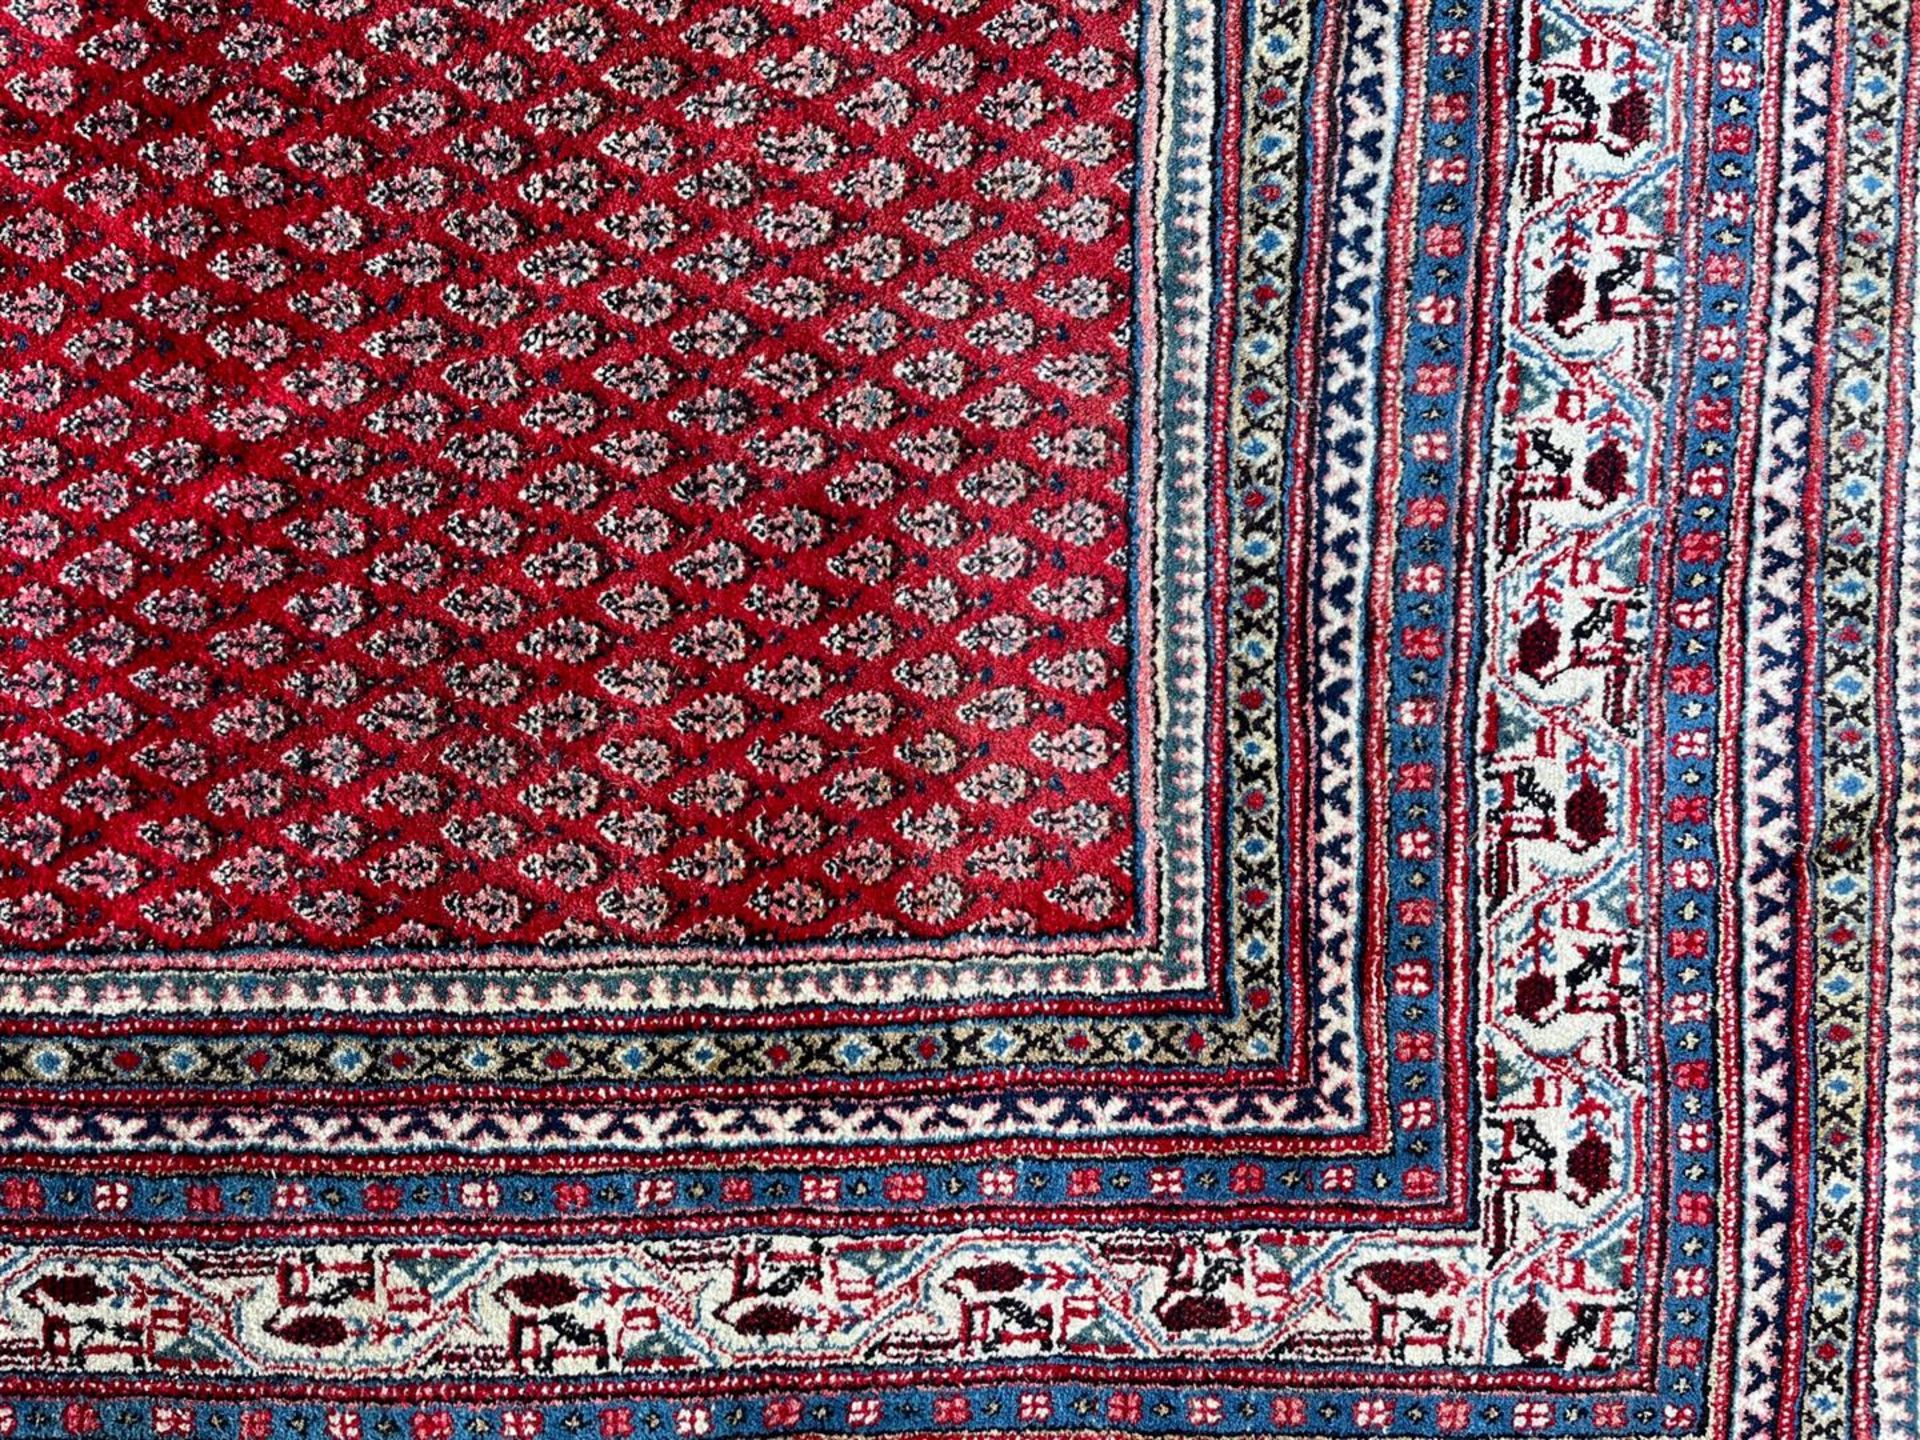 Mihr carpet - Image 2 of 3